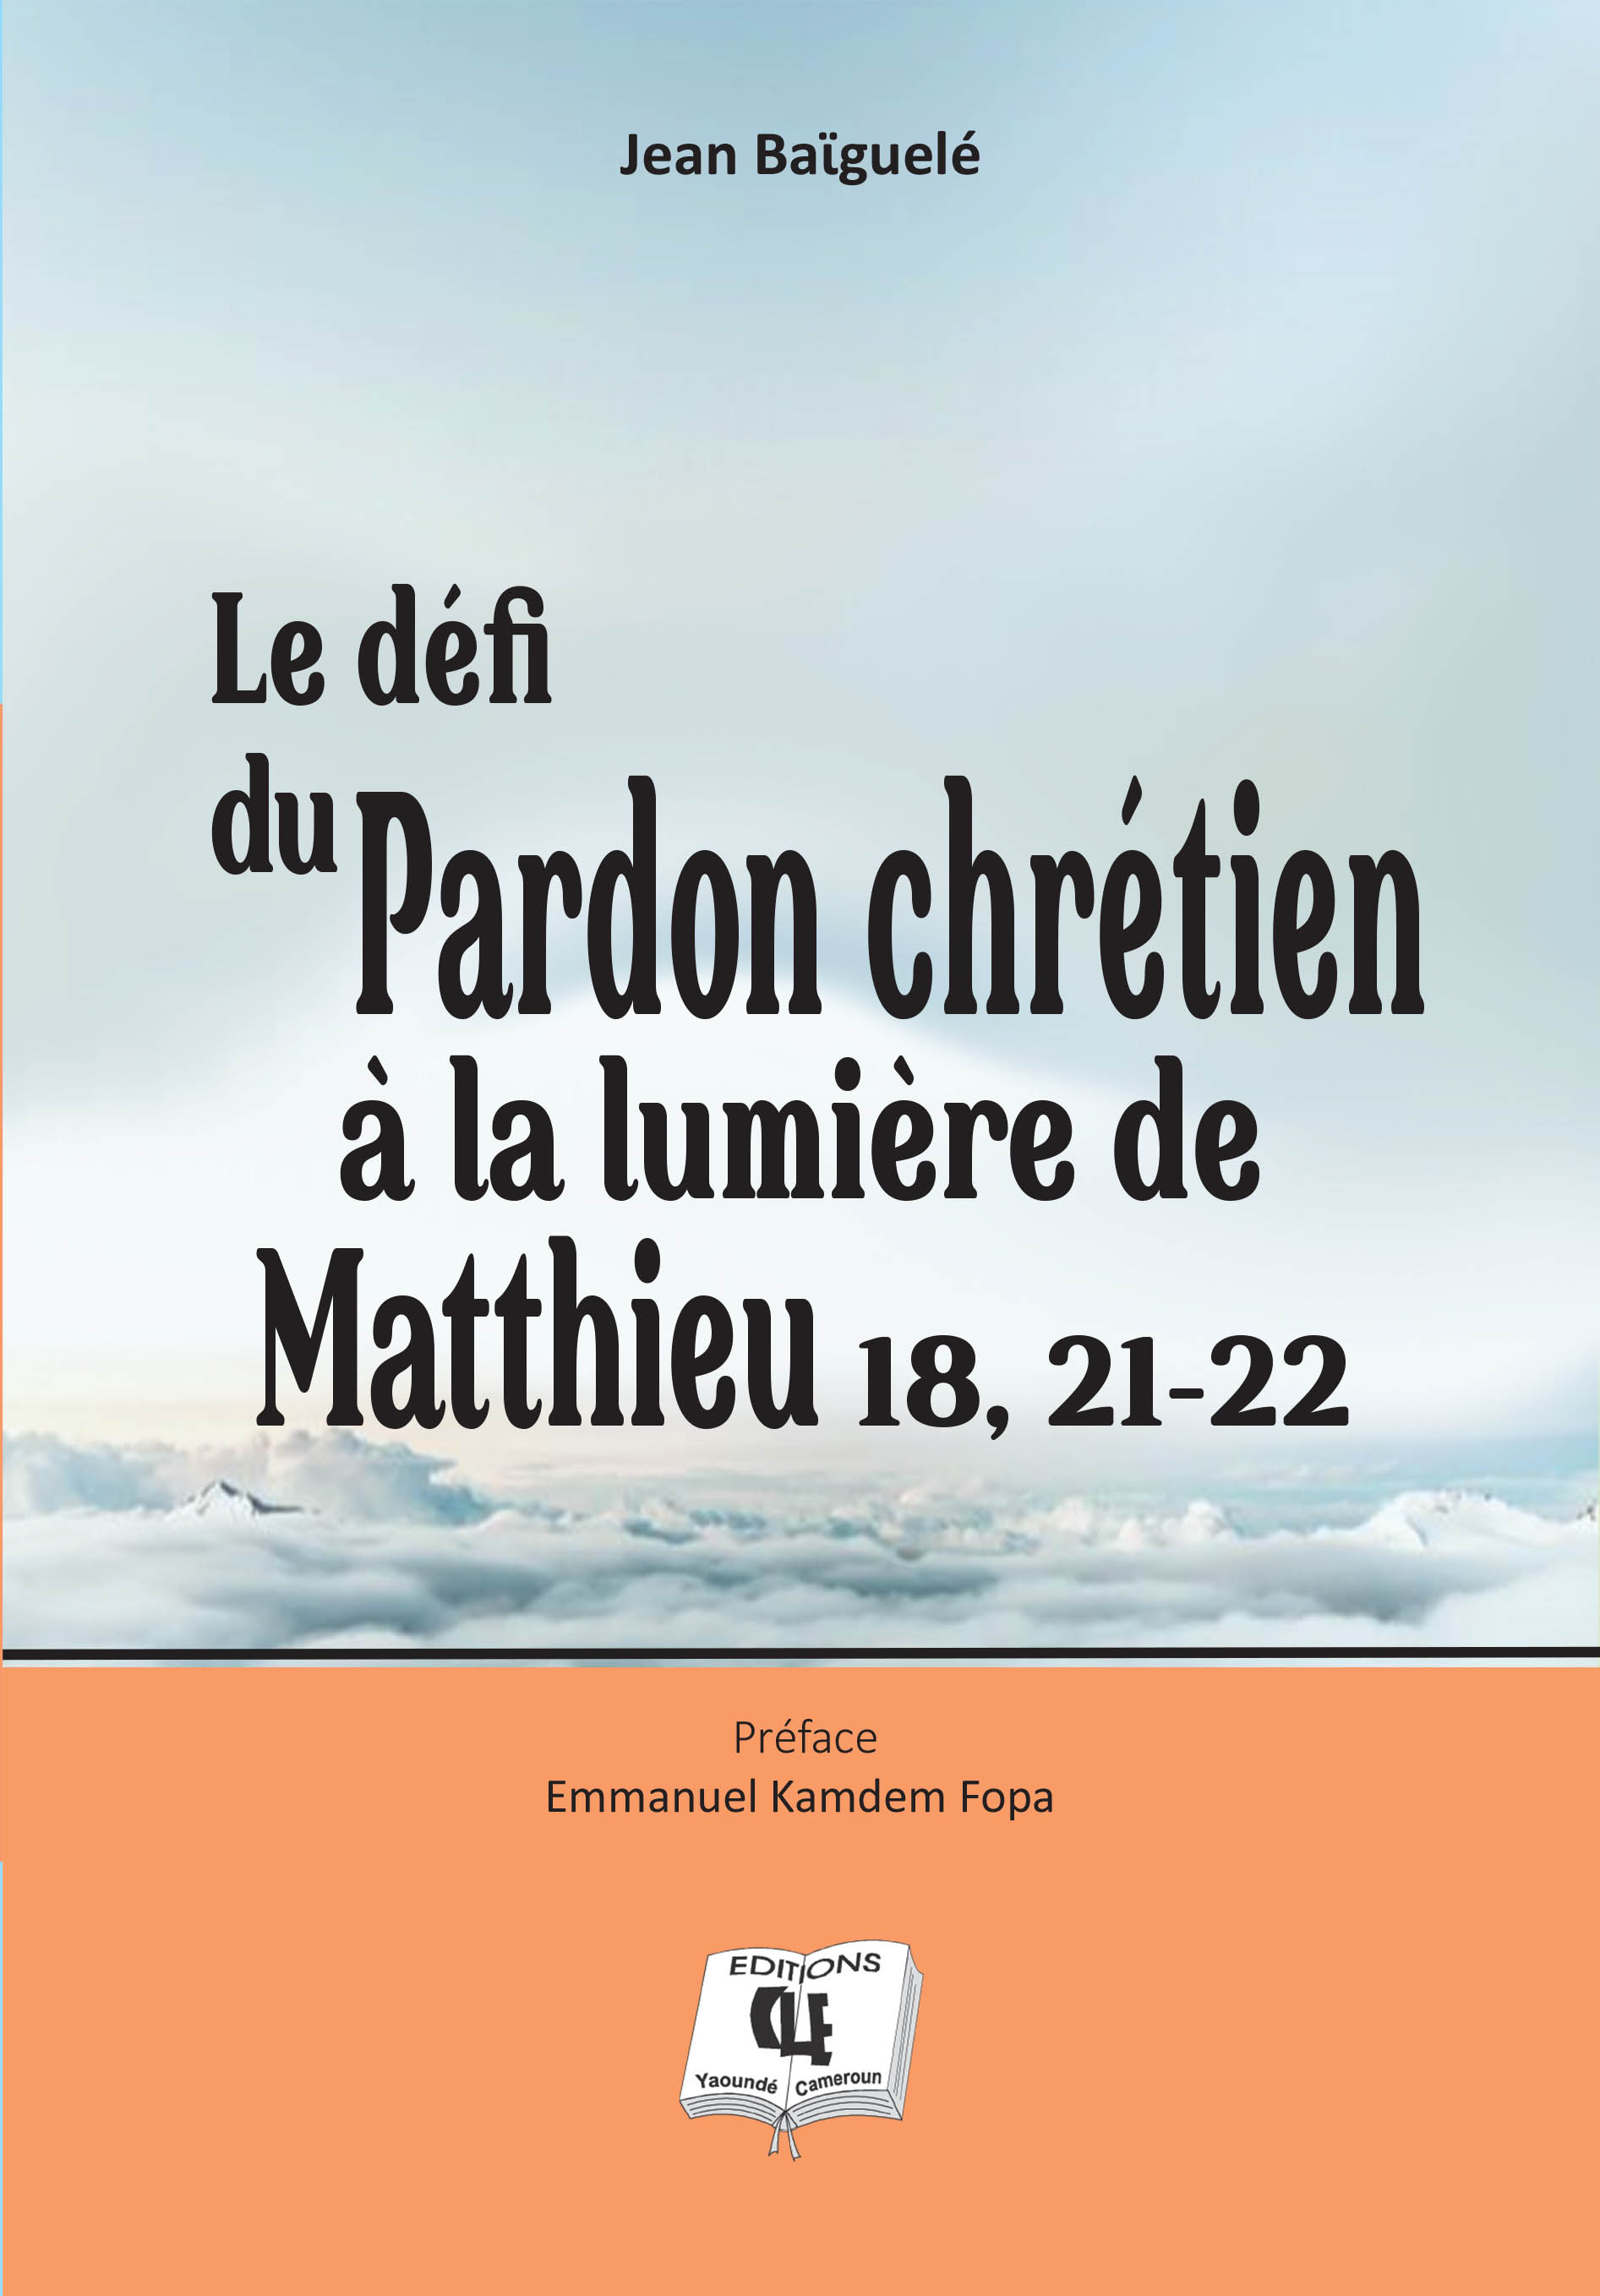 Le défi du pardon chrétien à la lumière de Matthieu 18, 21-22